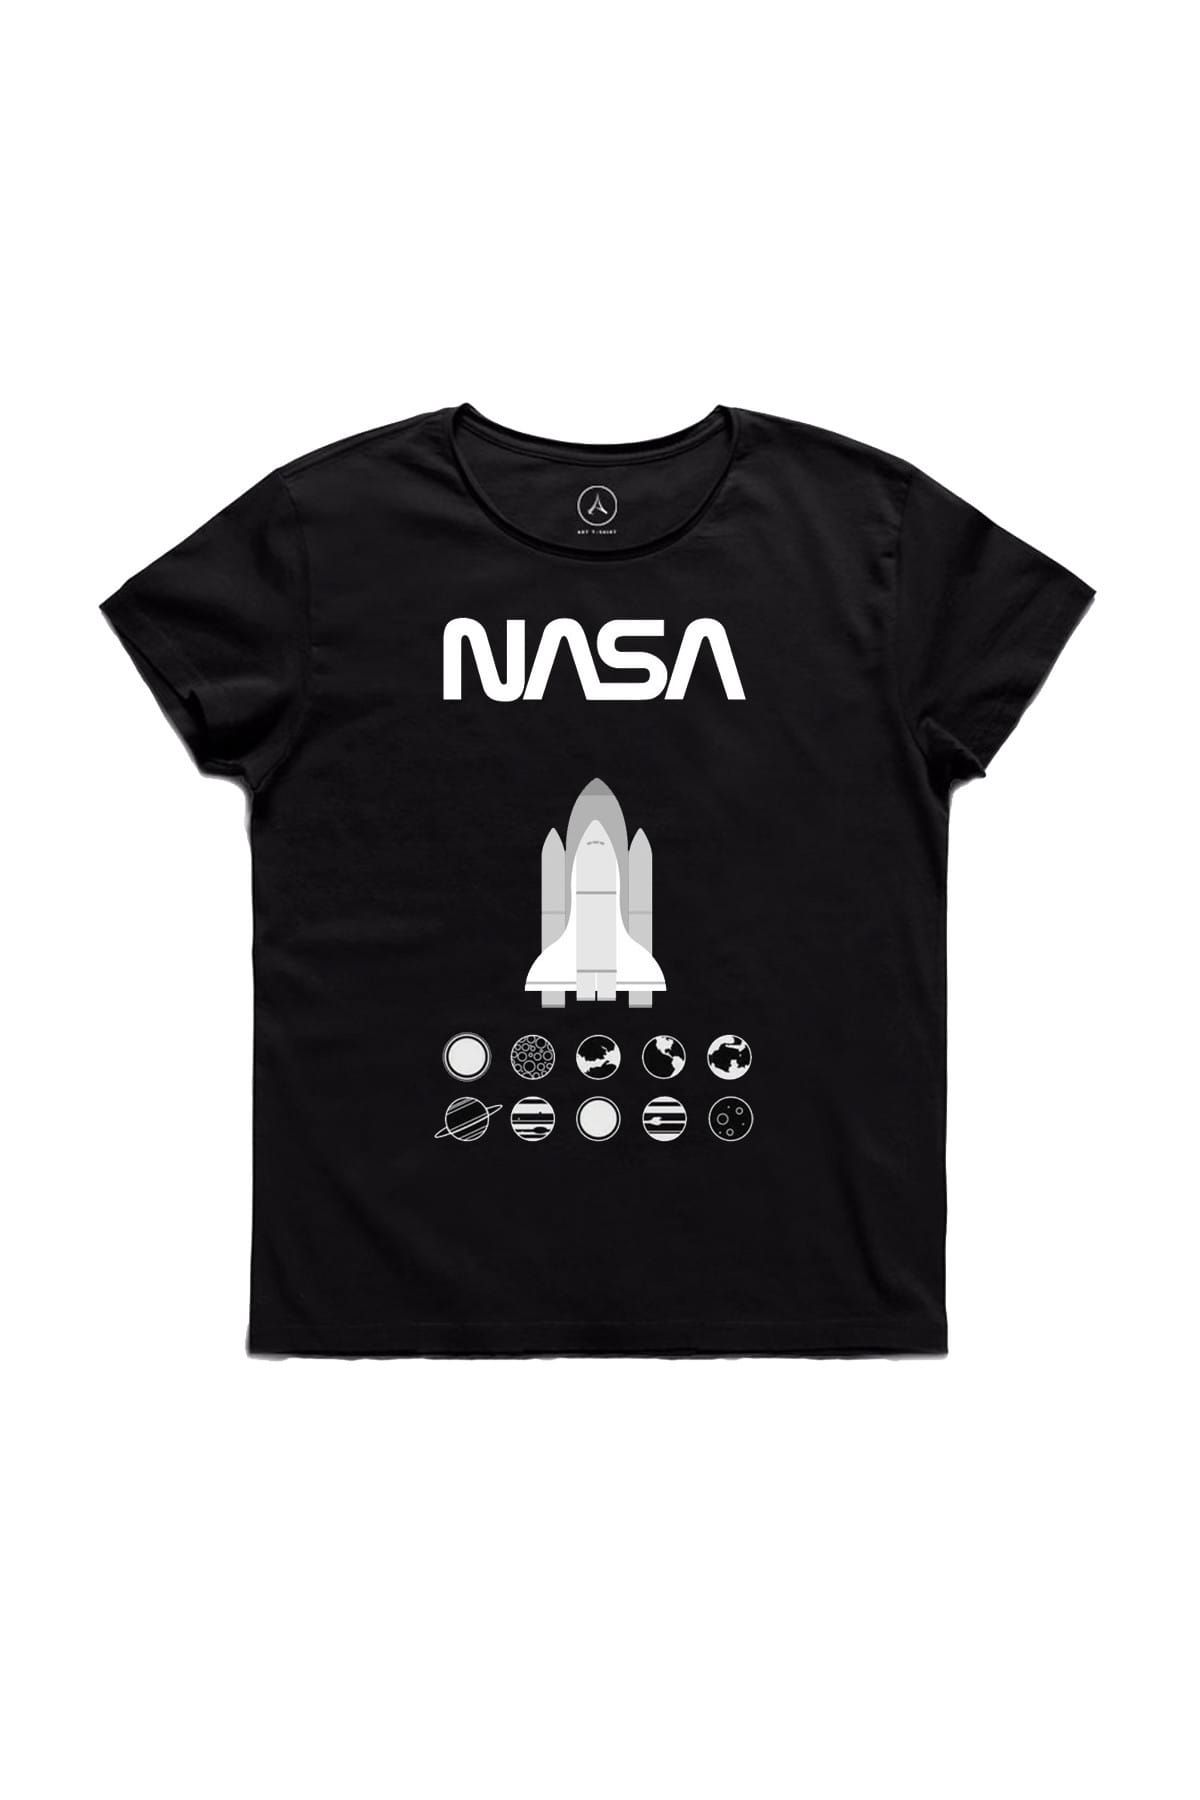 Art T-Shirt Nasa and Planets Erkek Tişört - ARTRND02613M